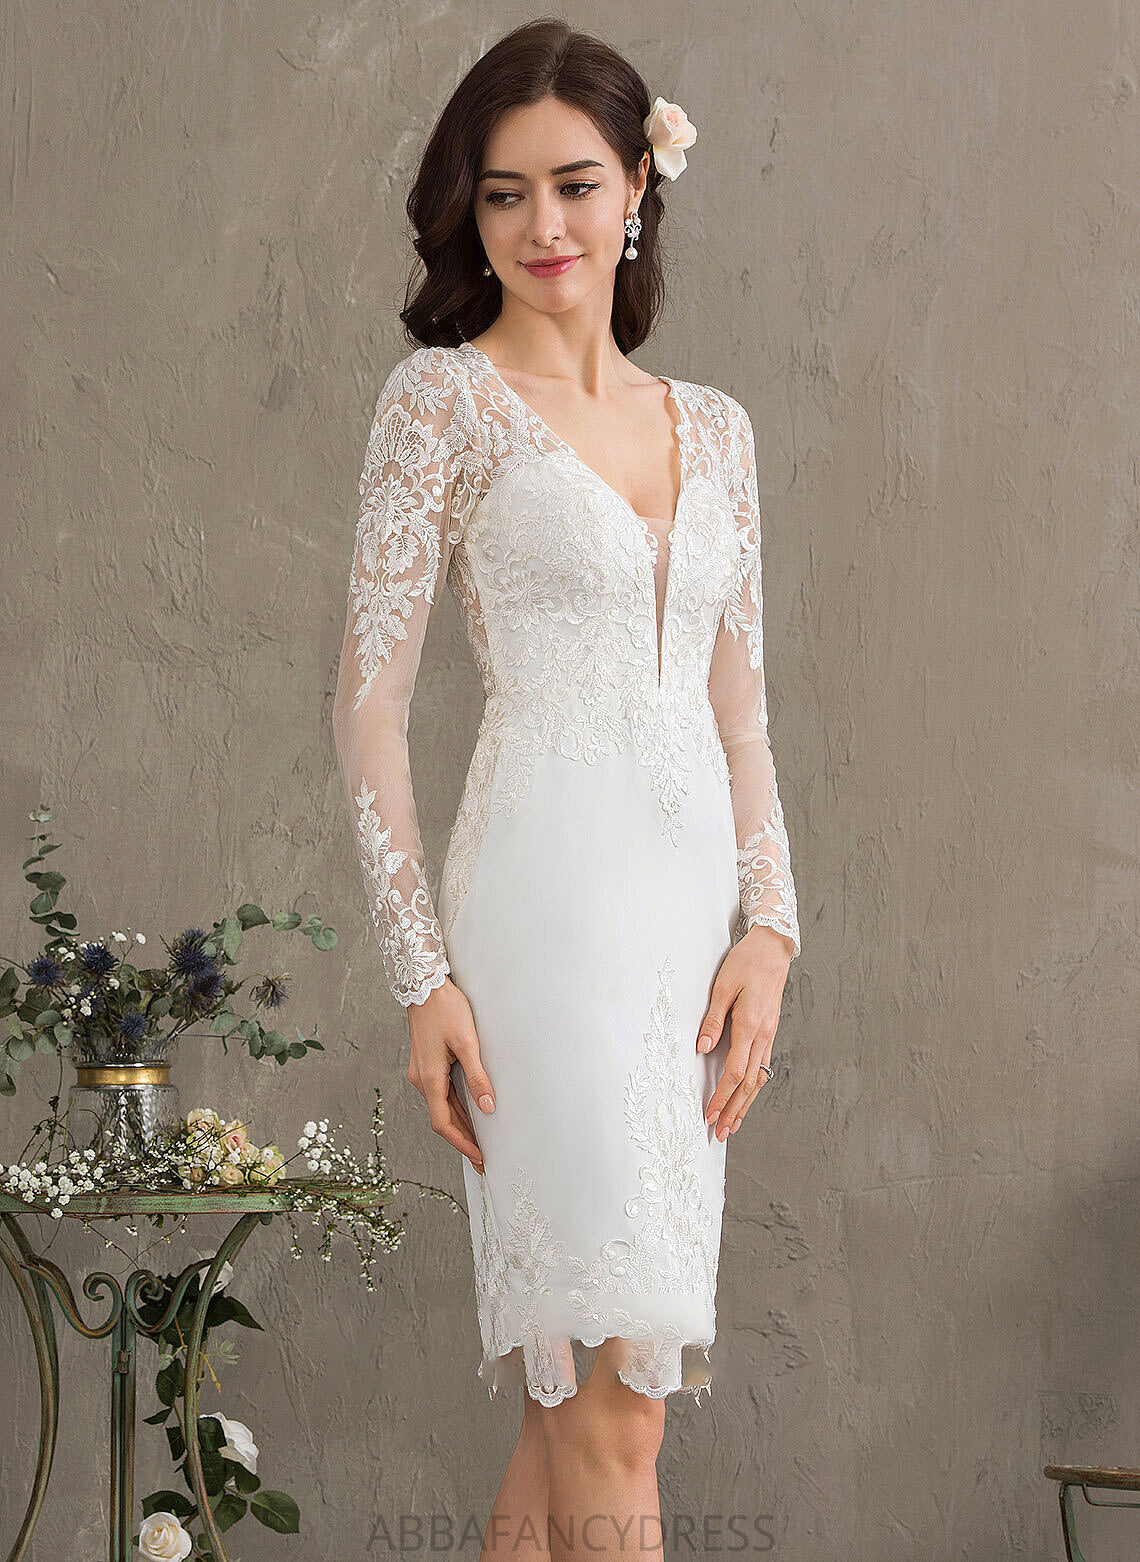 Crepe Stretch Wedding Sheath/Column Dress V-neck Wedding Dresses Marlie Knee-Length